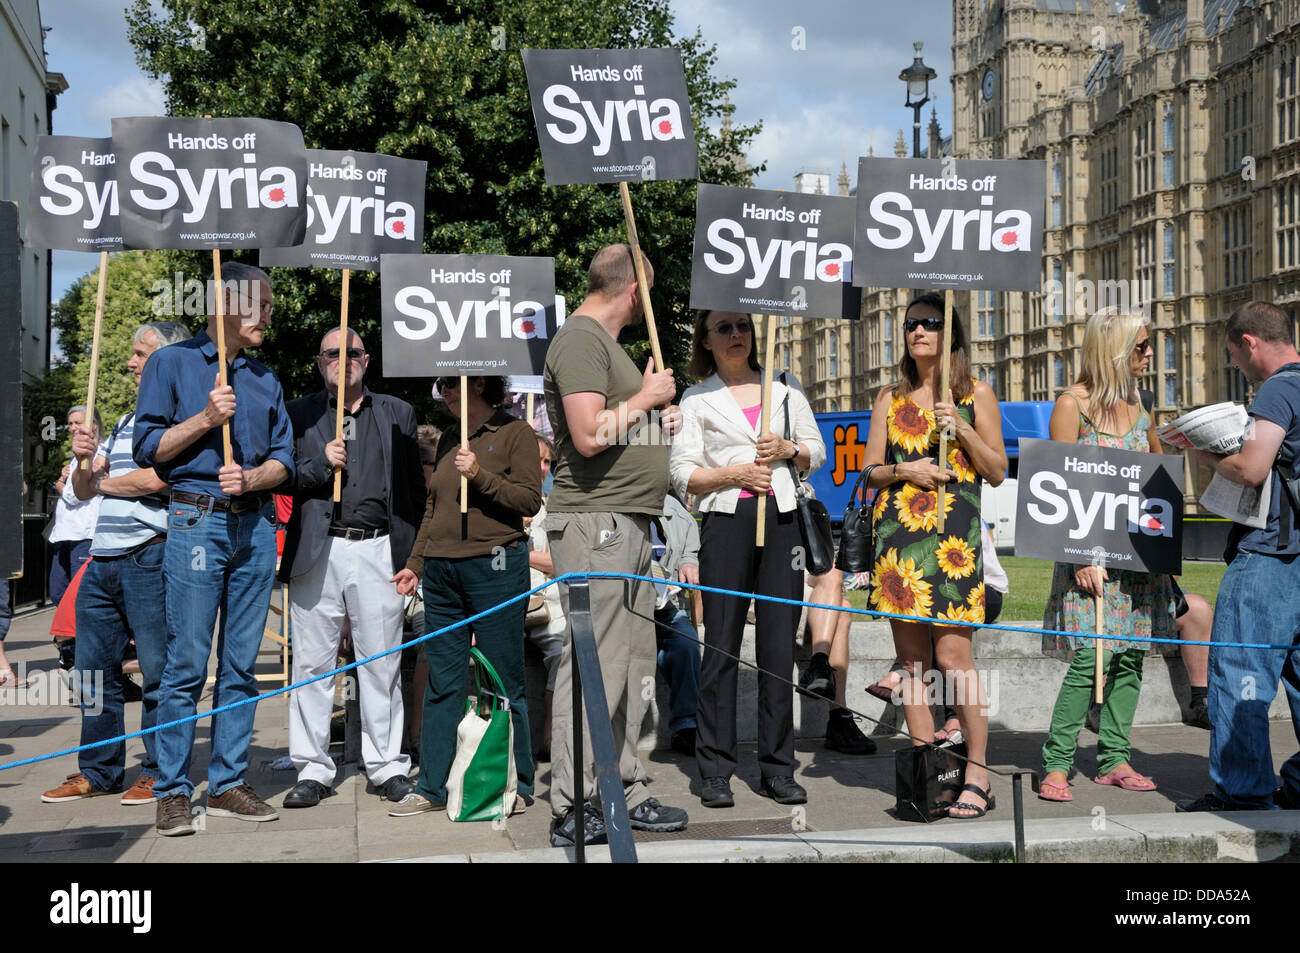 Westminster, Londres, Reino Unido. 29 Aug, 2012. Protesta contra la acción militar en Siria. El Parlamento recordó a debatir posibles medidas contra el régimen sirio. Foto de stock